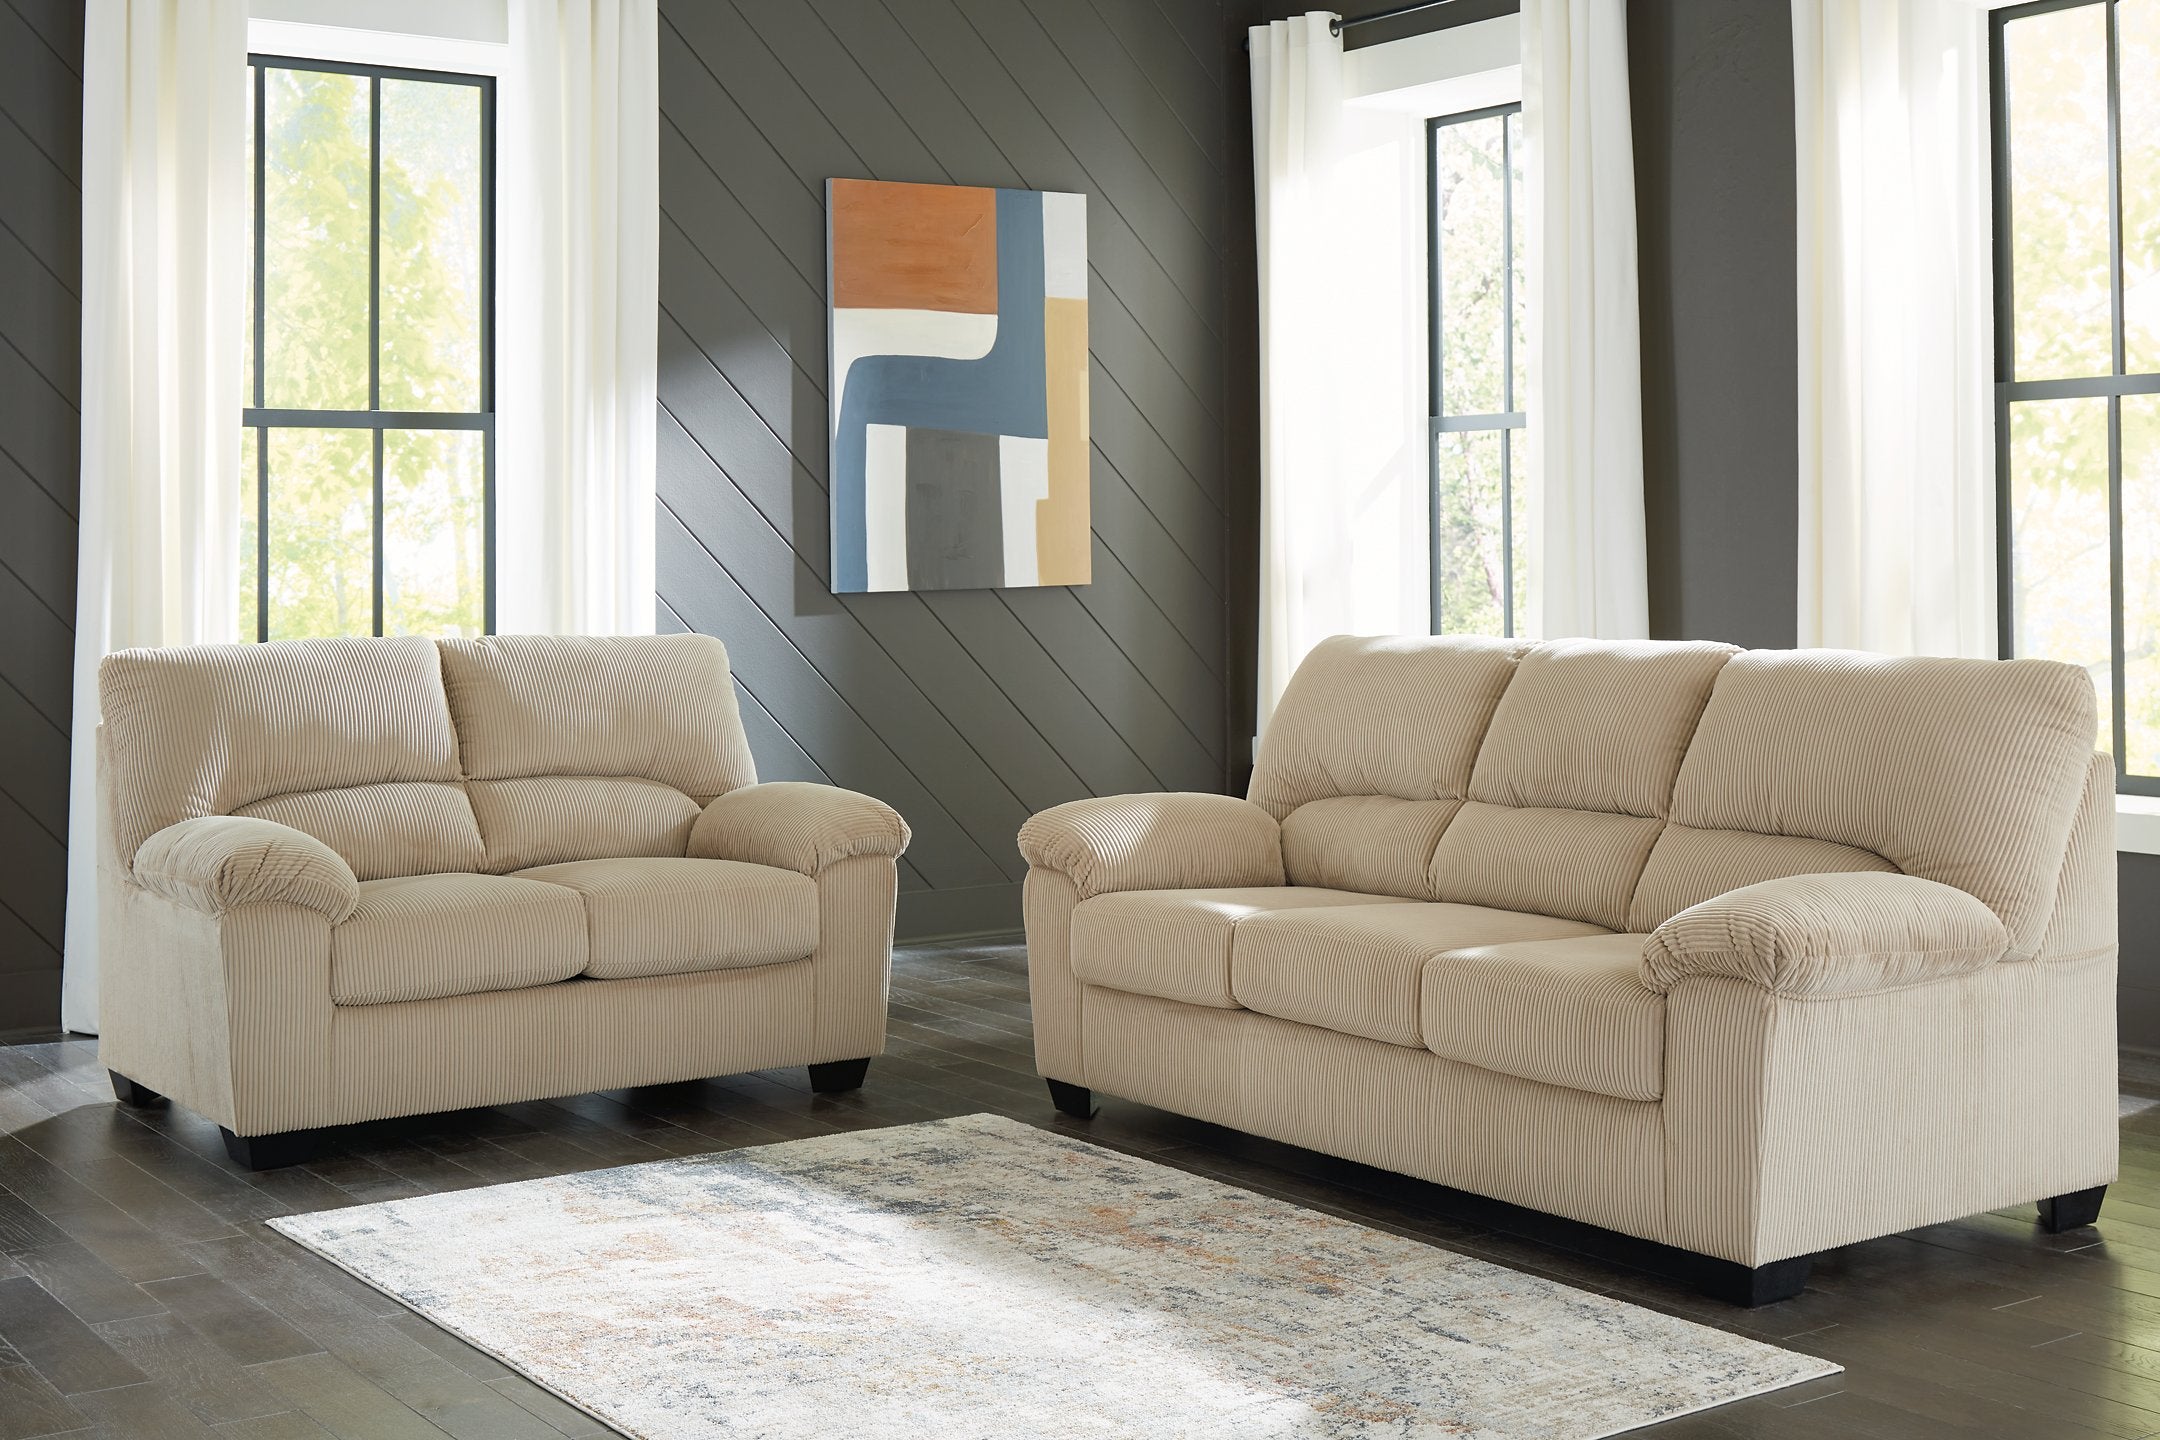 SimpleJoy Living Room Set - Romeo & Juliet Furniture (Warren,MI)